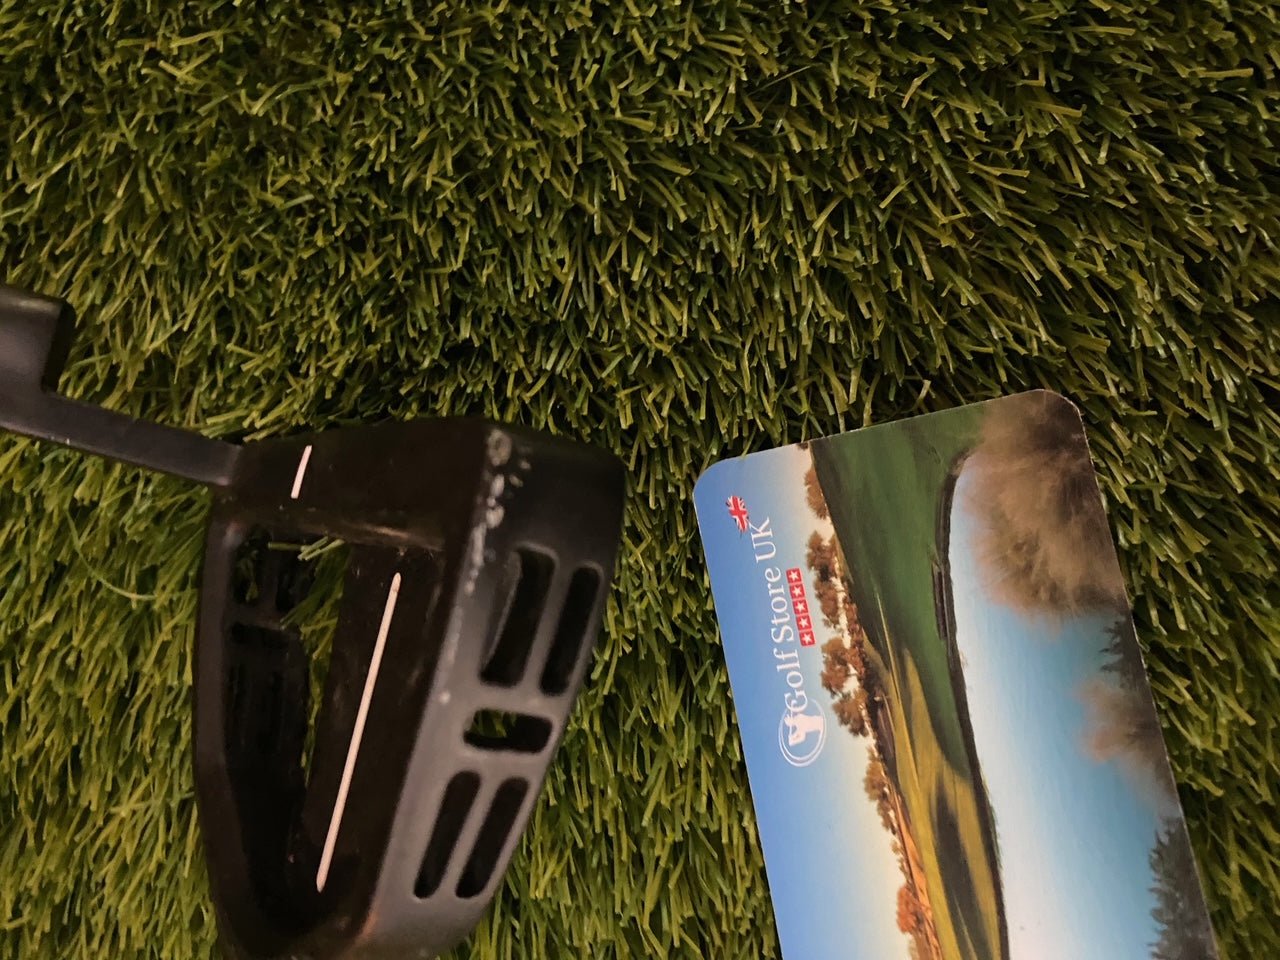 Fazer CTR22 Putter - Golf Store UK